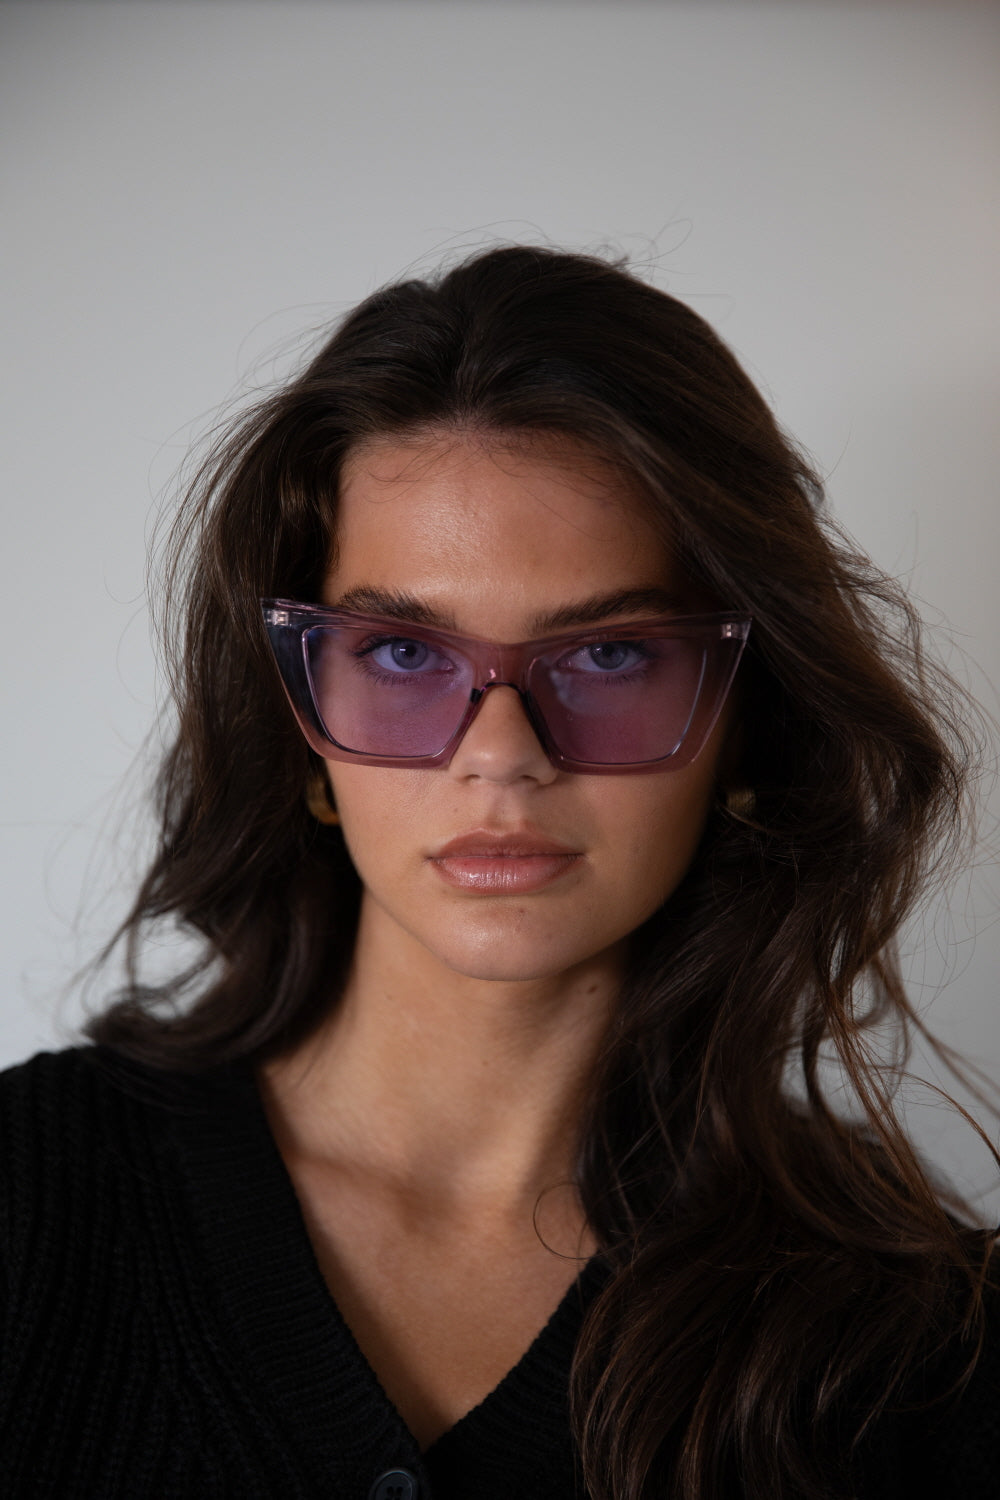 Oversized angular cateye sunglasses in Purple